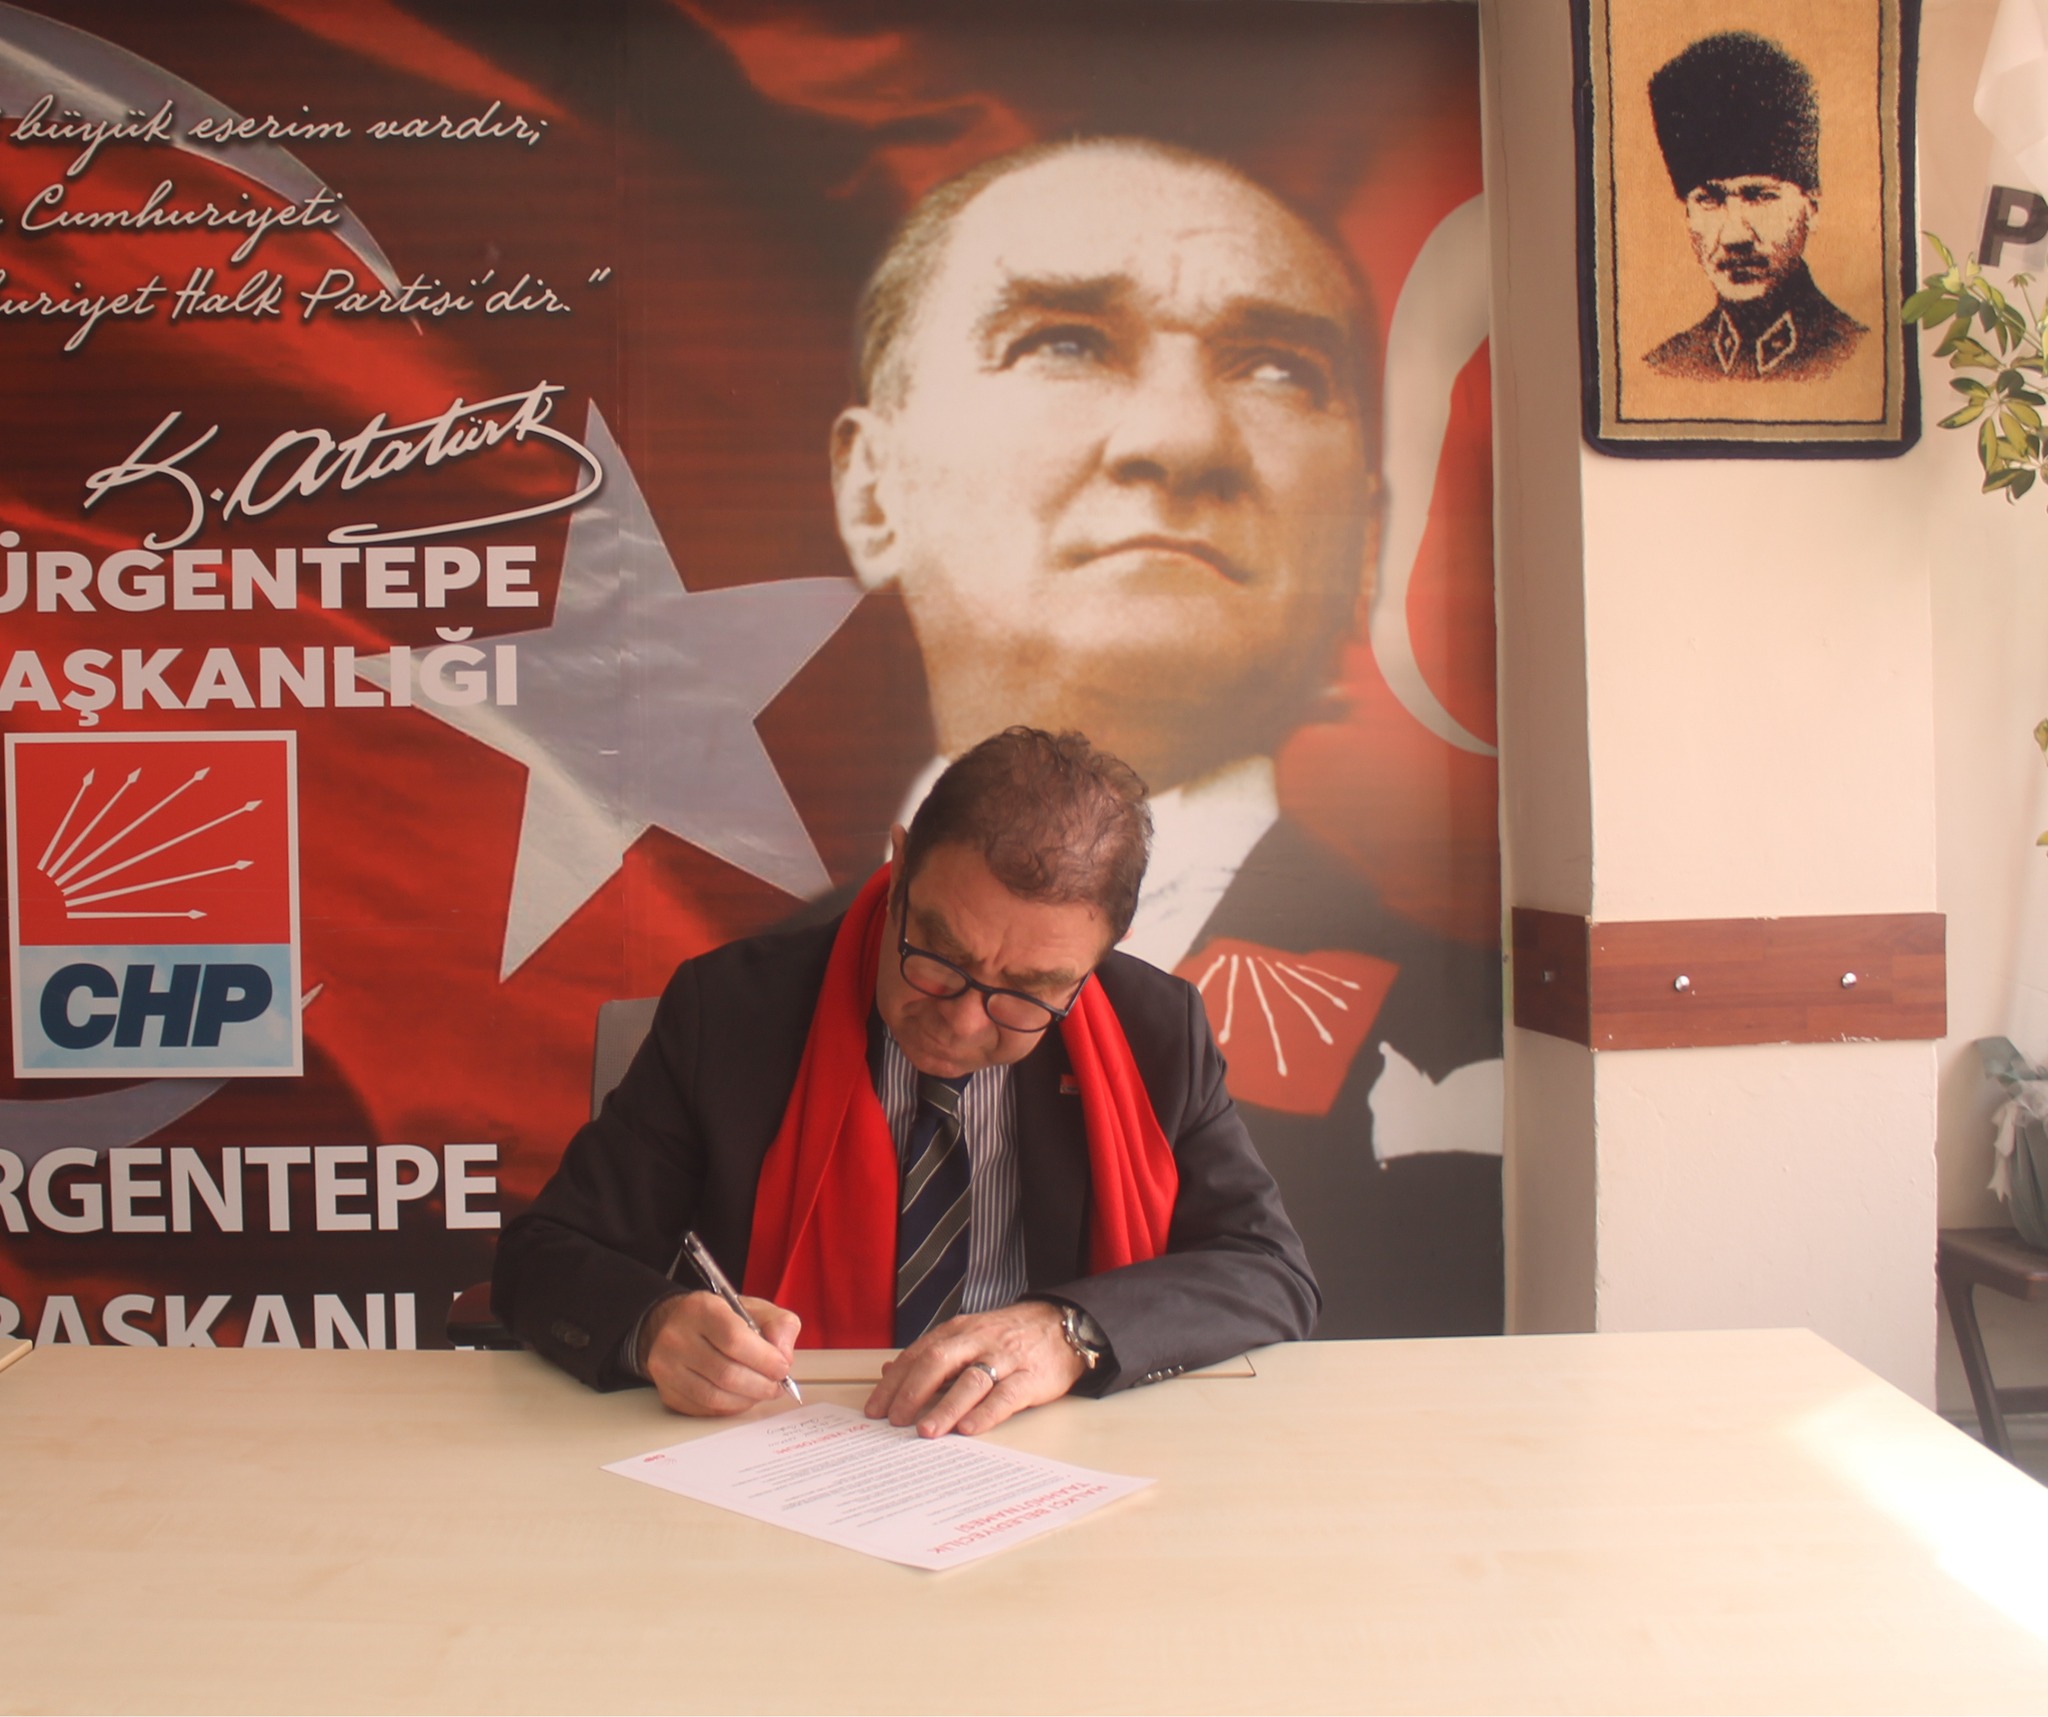 CHP Gürgentepe'de Halkçı Belediyecilik Taahhütnamesini Duyurdu